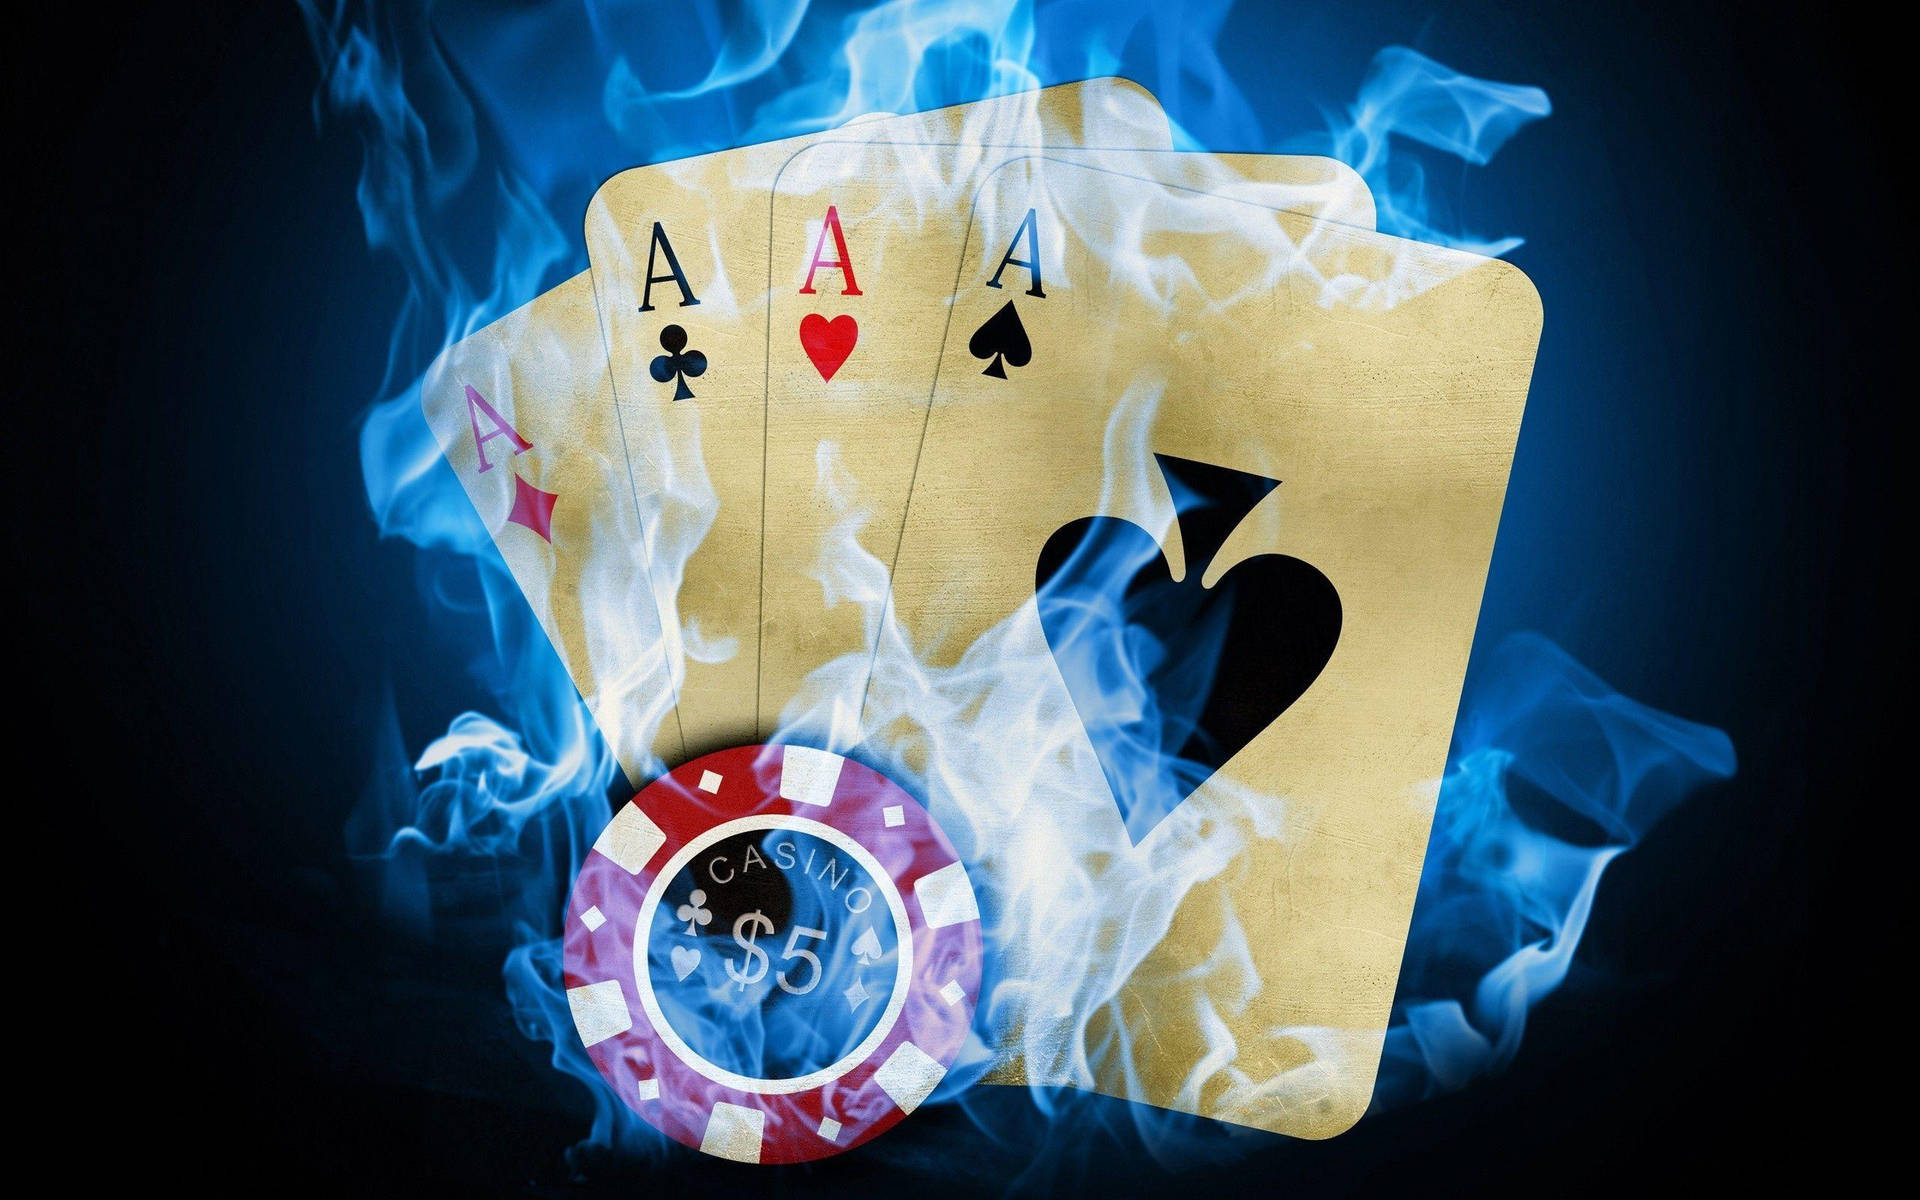 En pokerbord med et pokerkort og en flamme Wallpaper